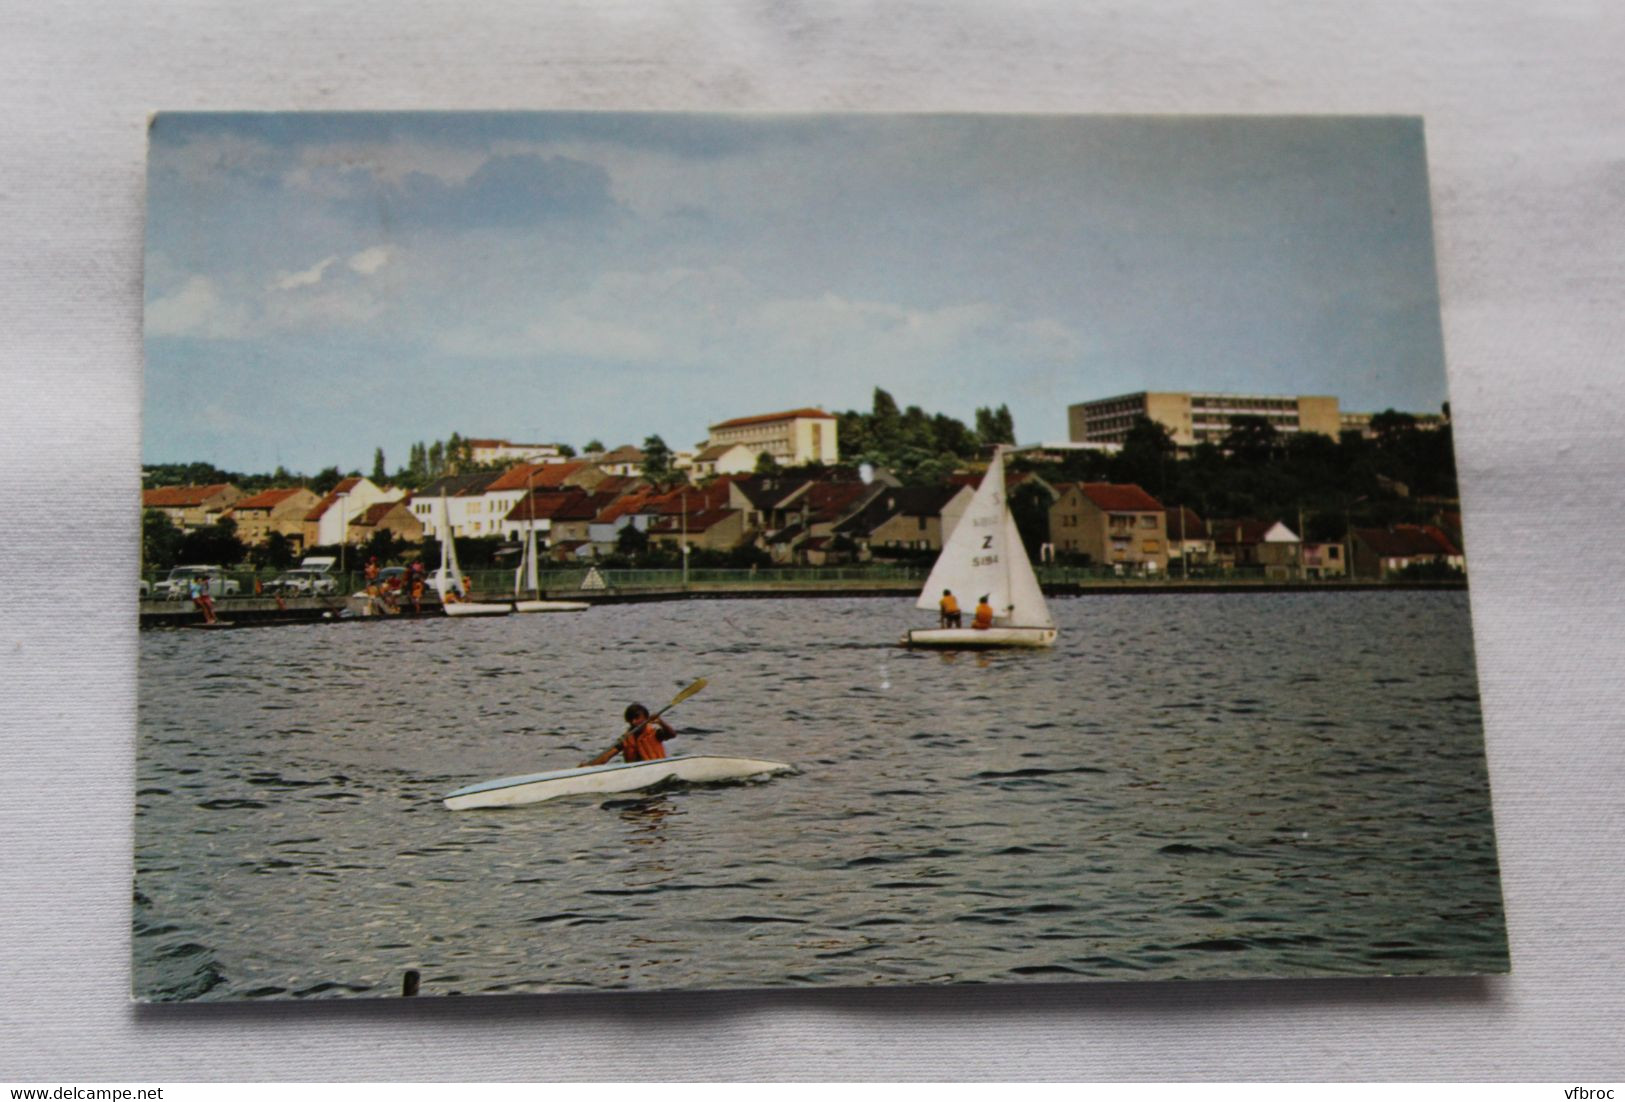 Cpm 1991, Creutzwald, Le Plan D'eau, Moselle 57 - Creutzwald